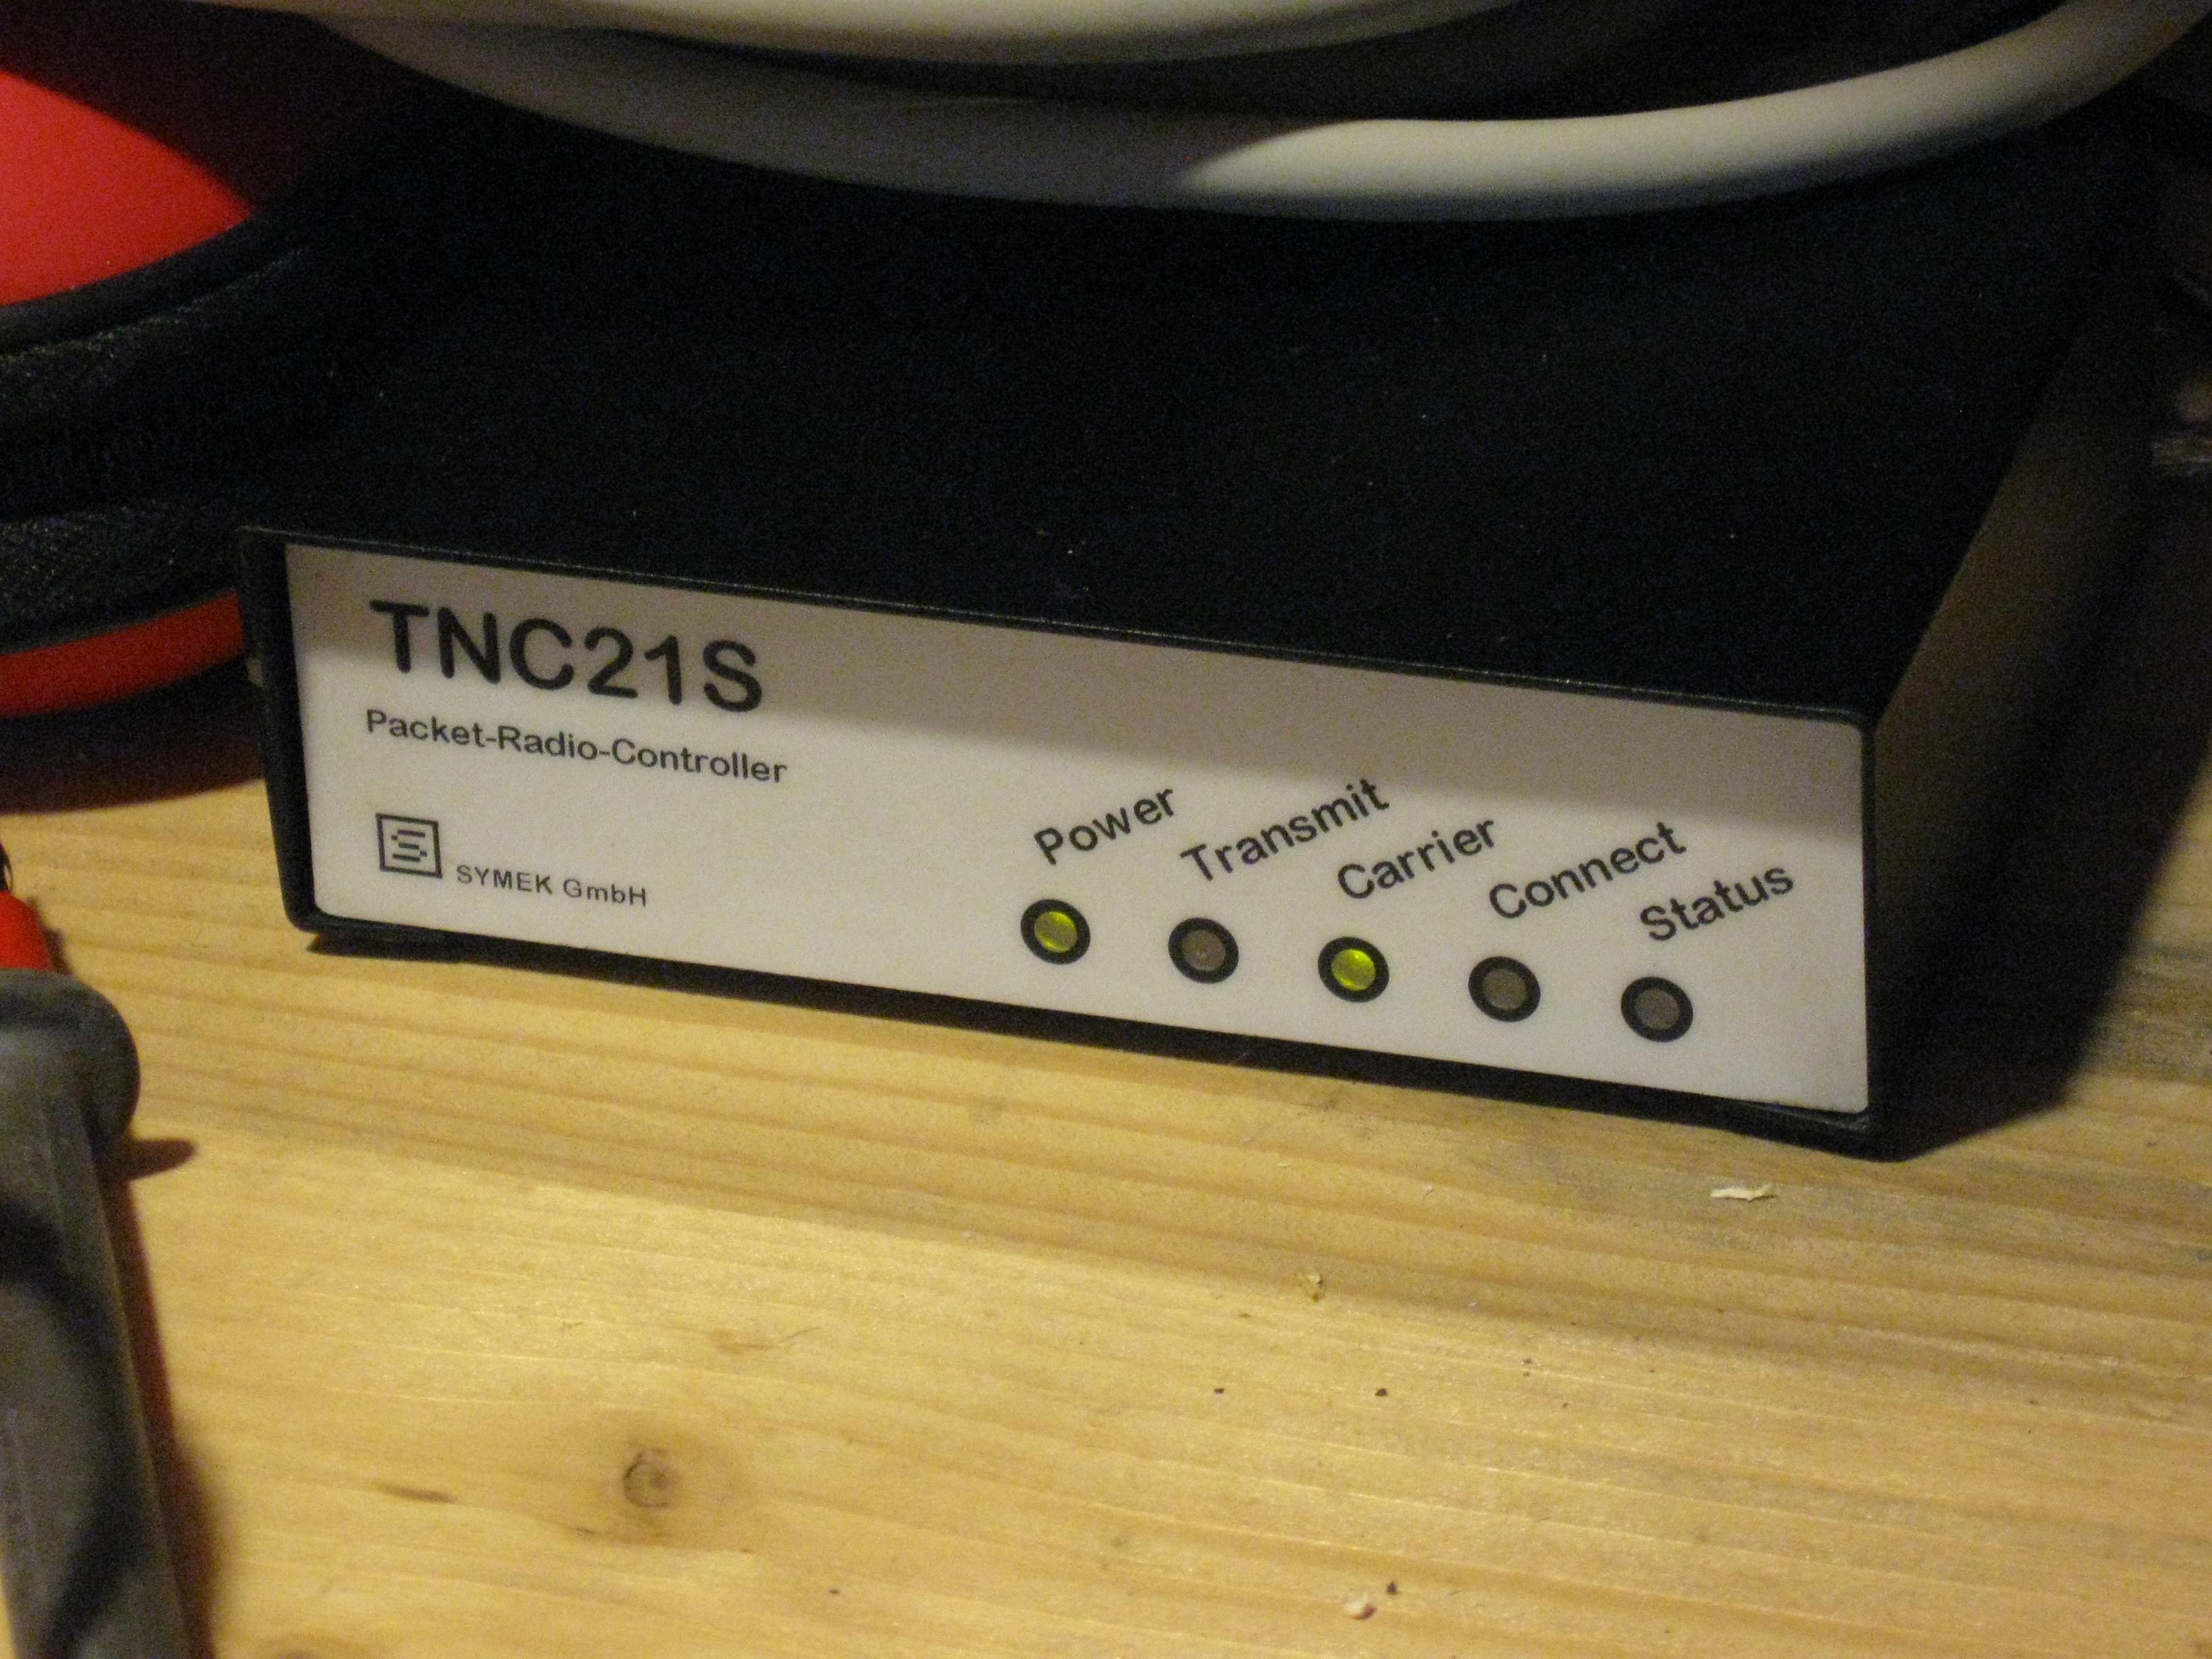 Endlich flackert die Carrier-LED beim TNC21S im mobilen Funkshak von Nepro 79